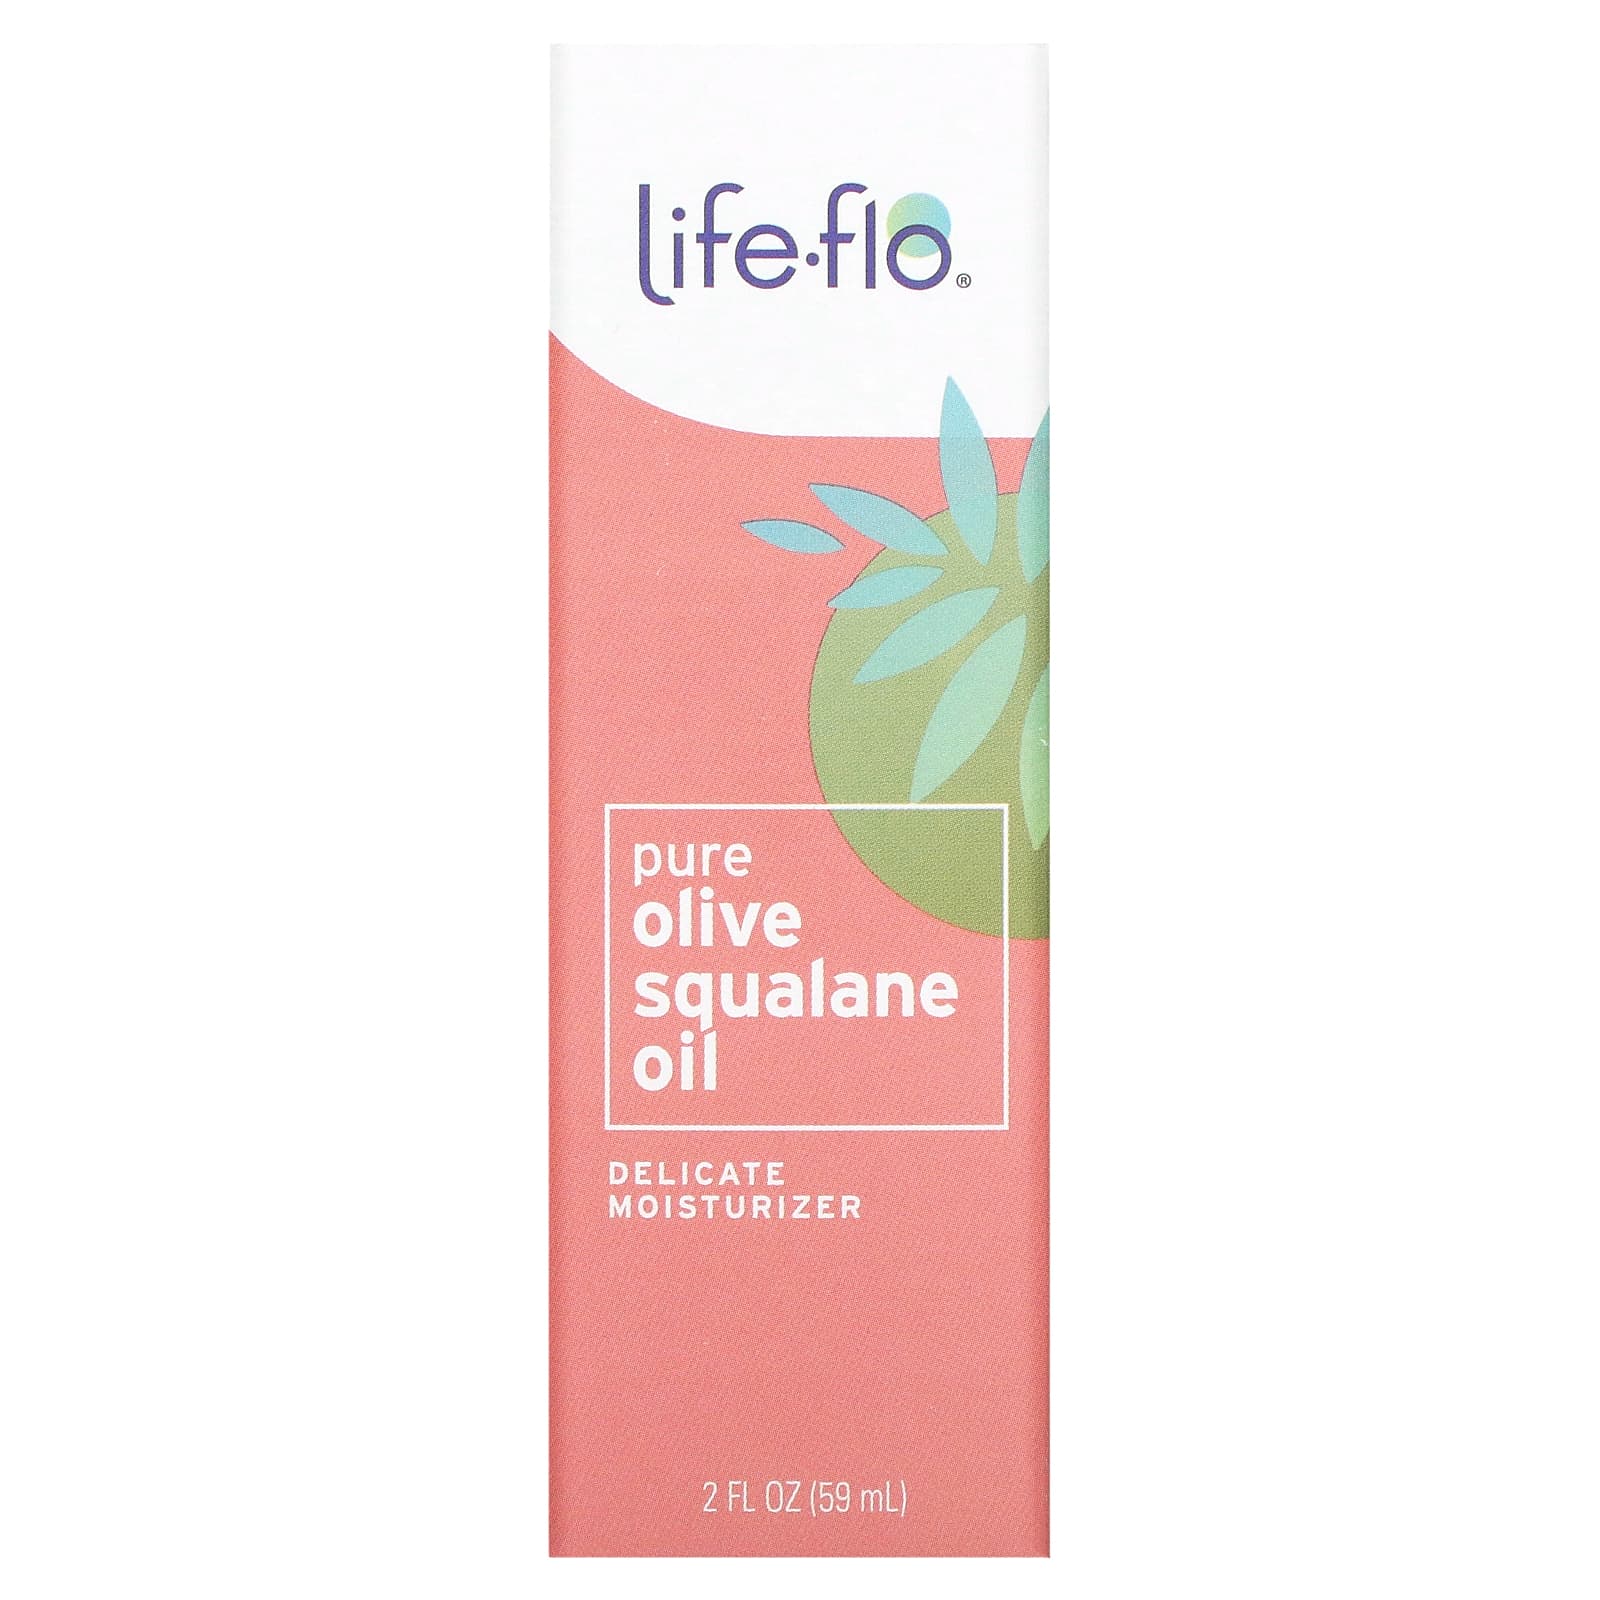 Life-flo Чистый сквален оливкового масла для ухода за кожей 60 мл life flo сквалан из оливкового масла 60 мл 2 жидк унции